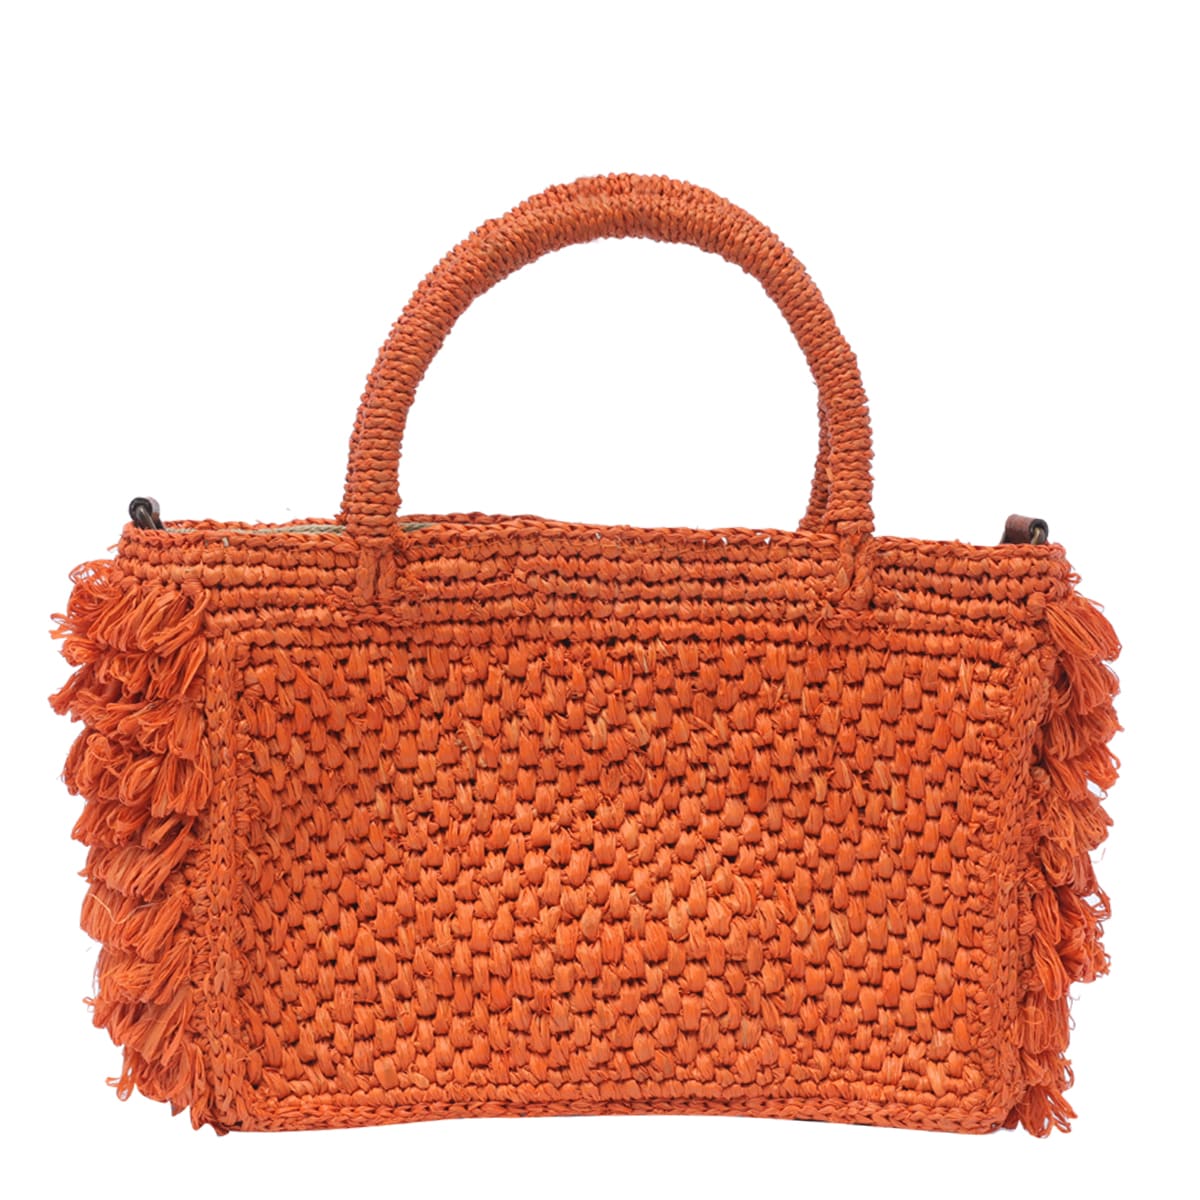 Ibeliv Cocktail Handbag In Orange